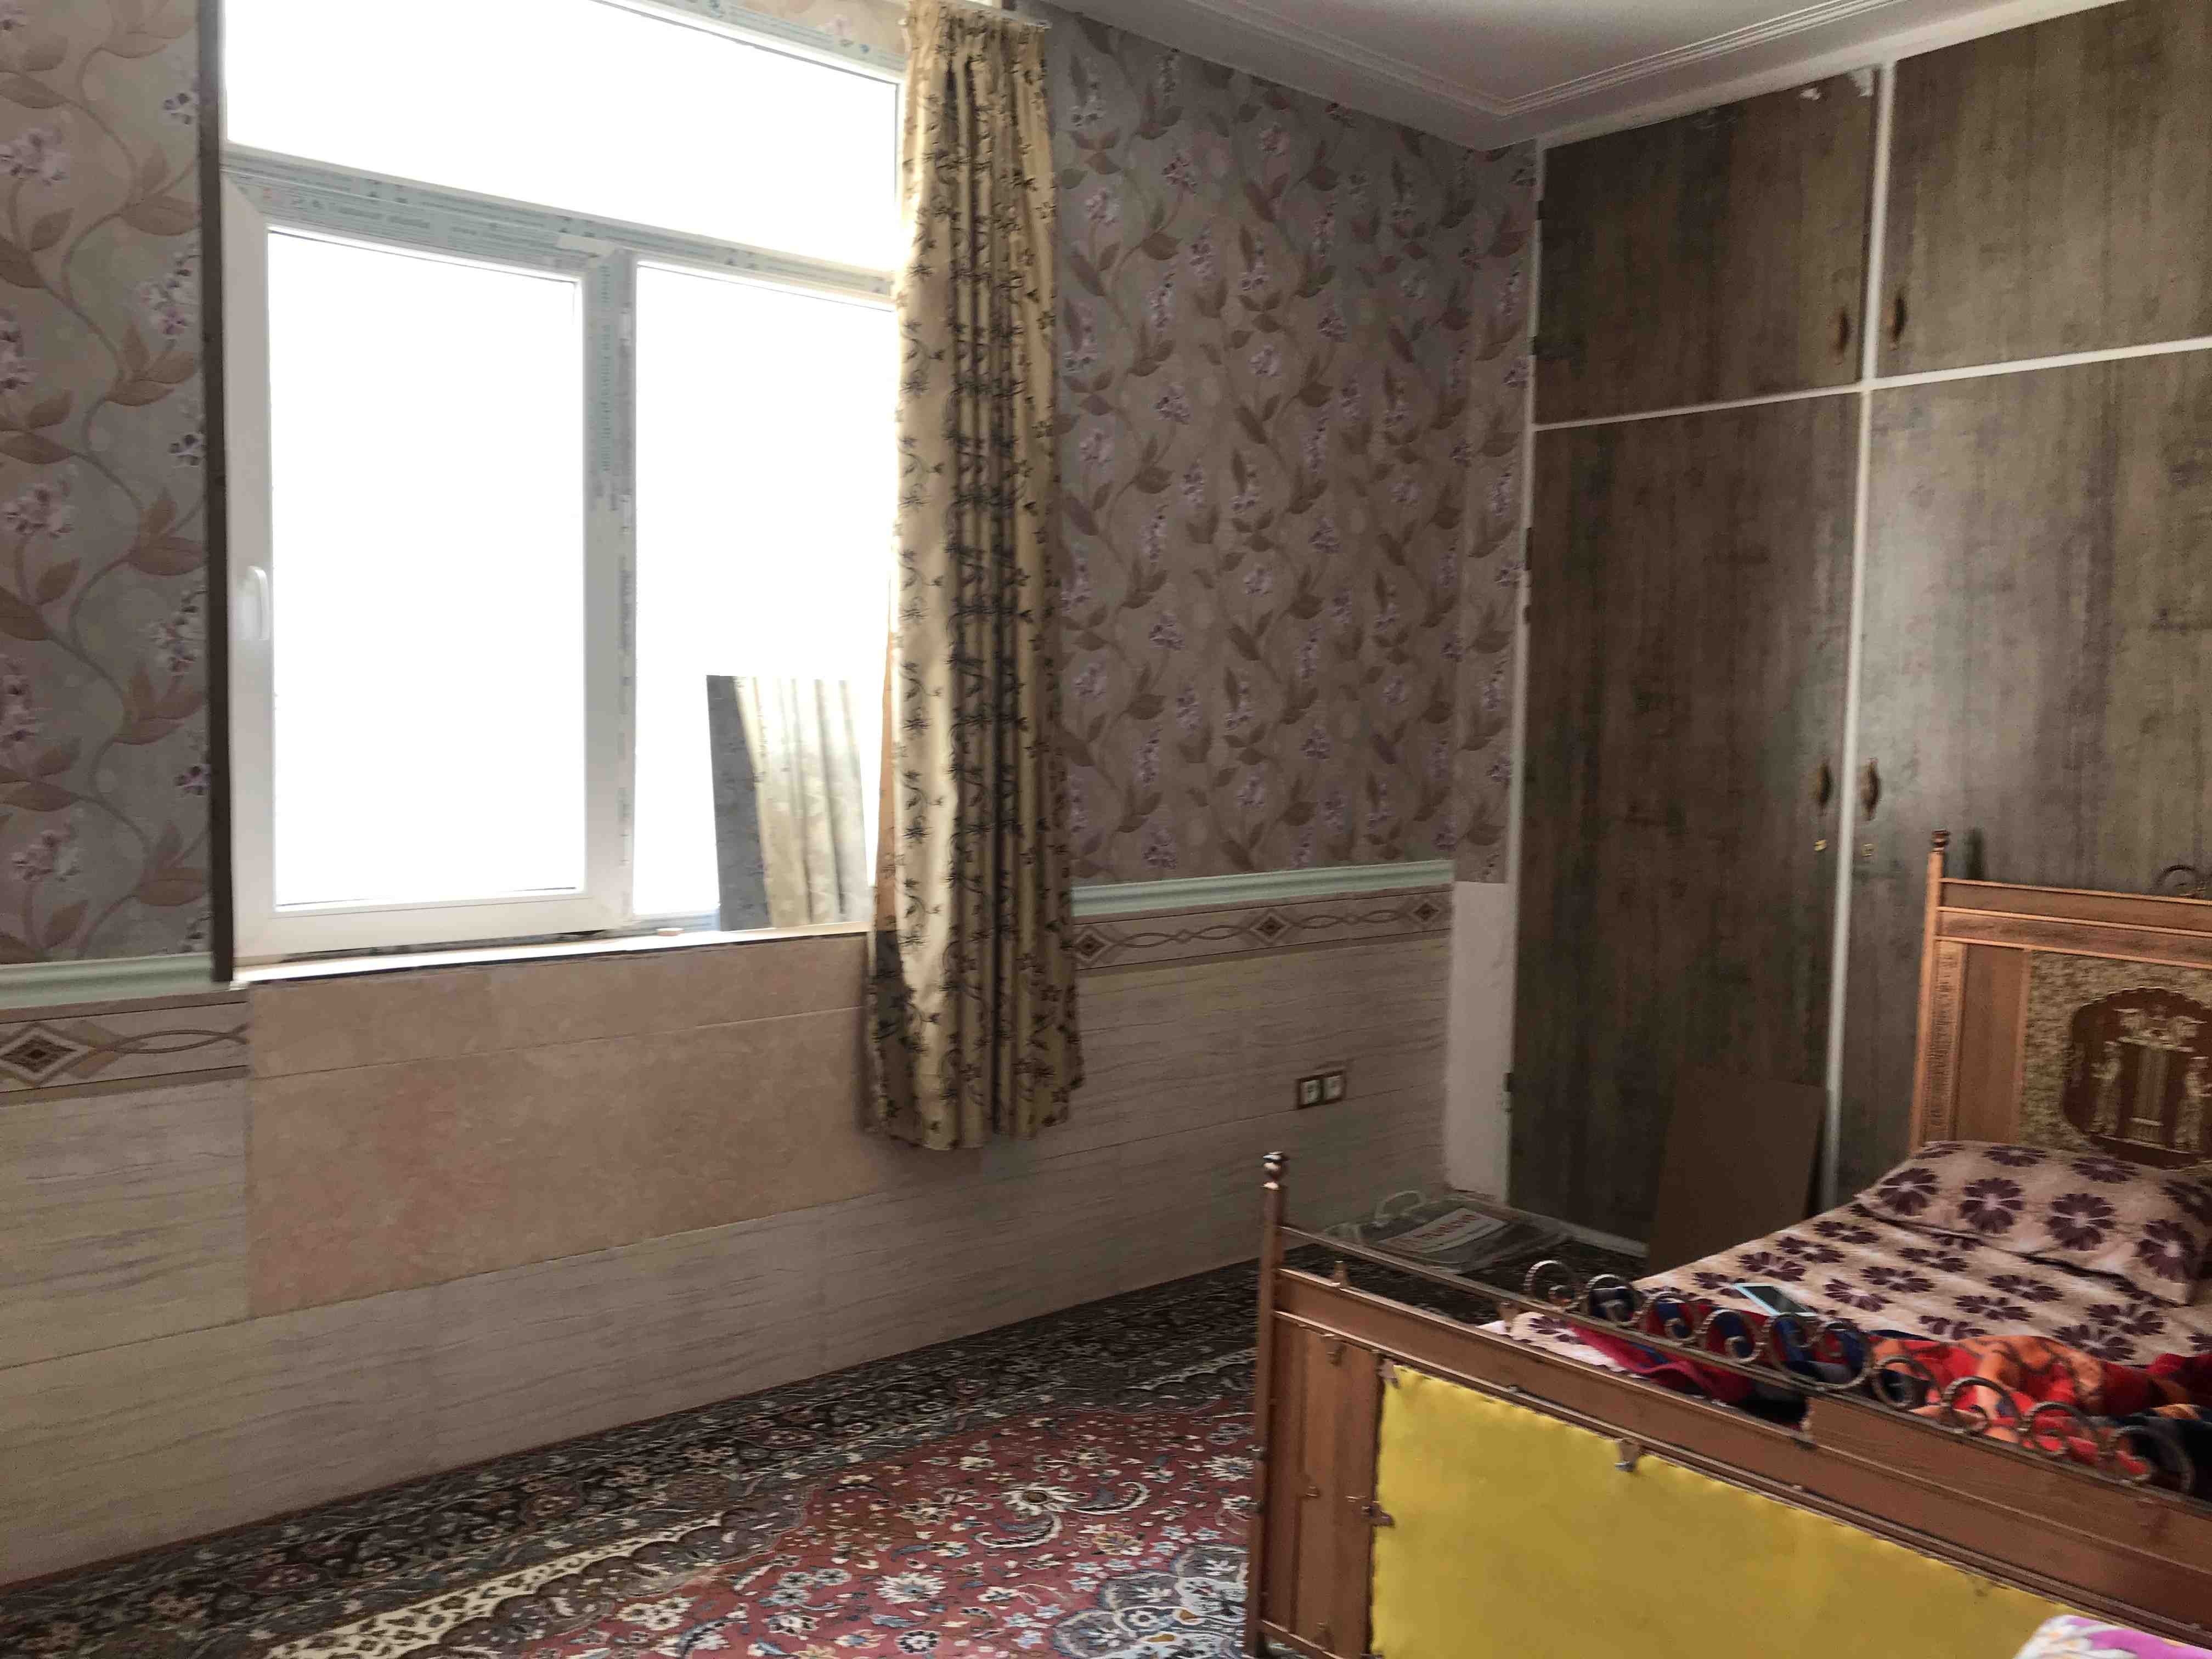 شهری اجاره منزل ویلایی ارزان در عدالت شیراز 